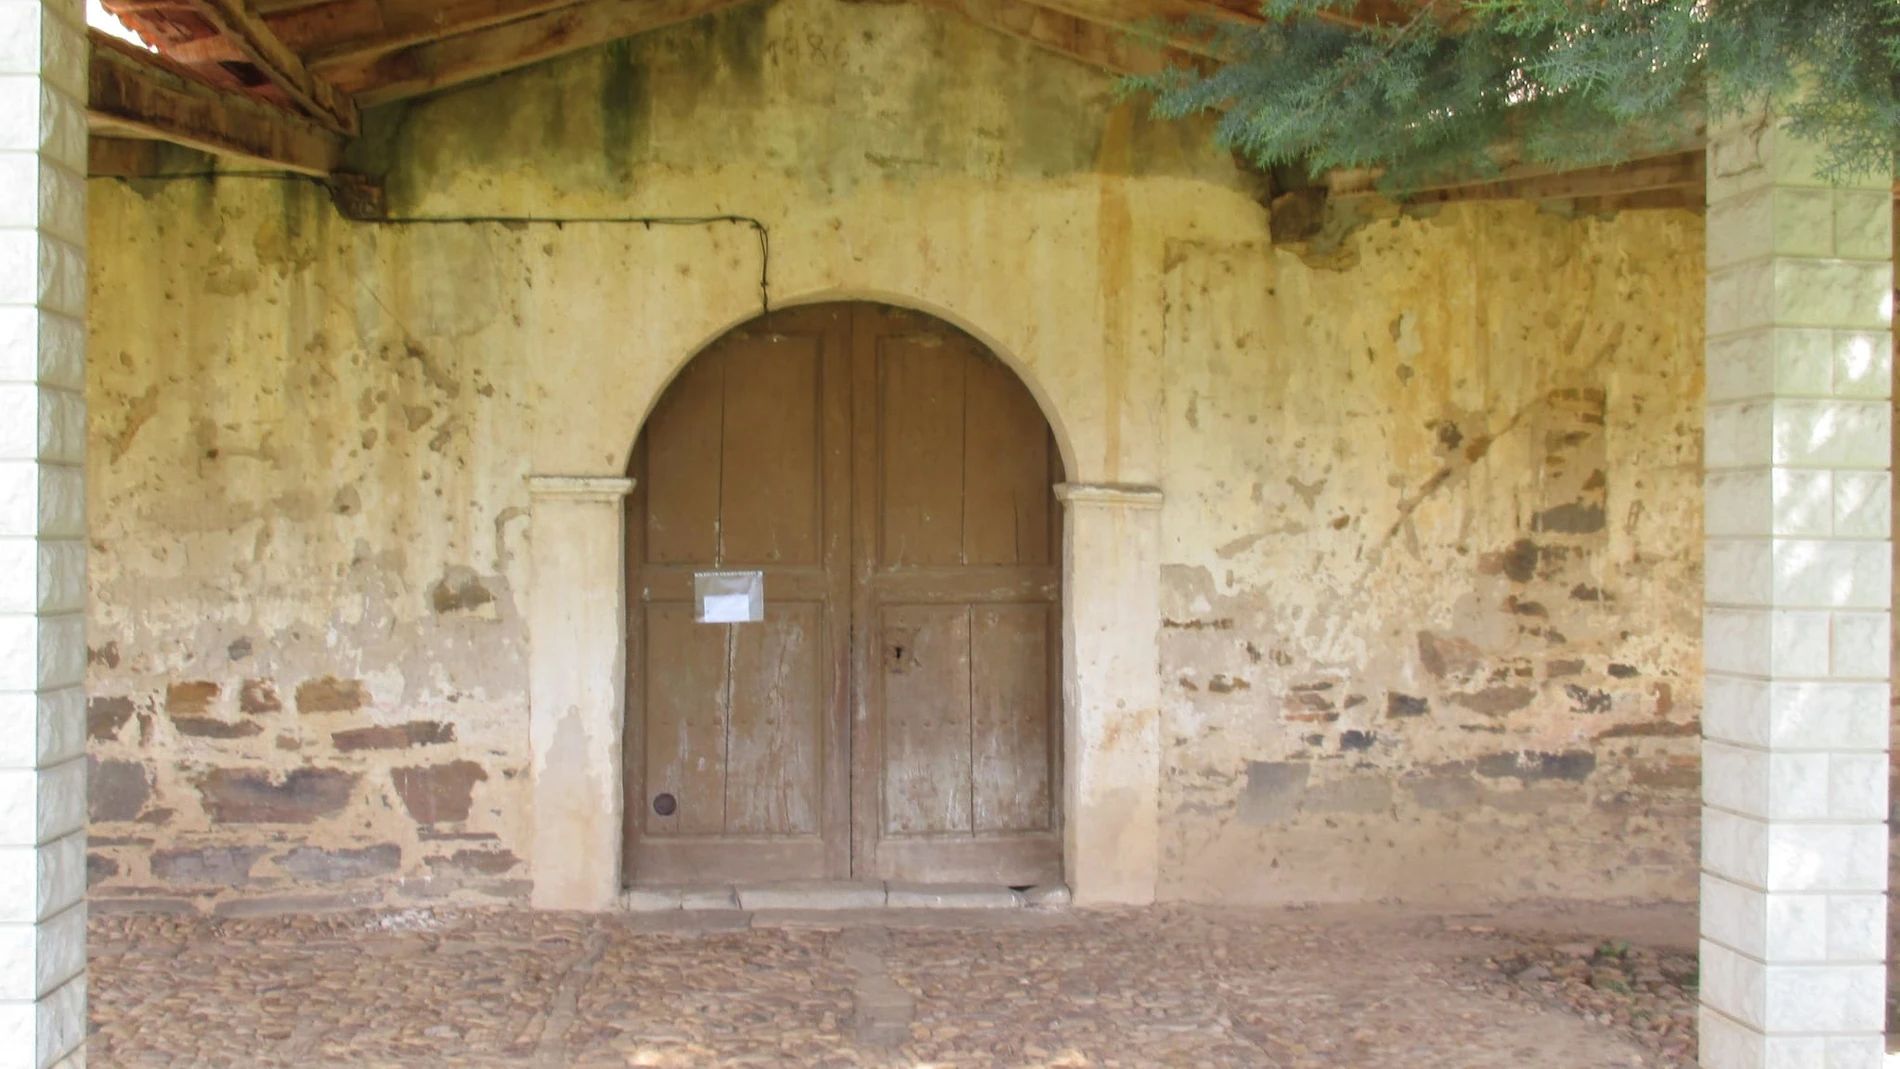 Puerta de uno de los templos leoneses al que entraron los dos detenidos para robar.